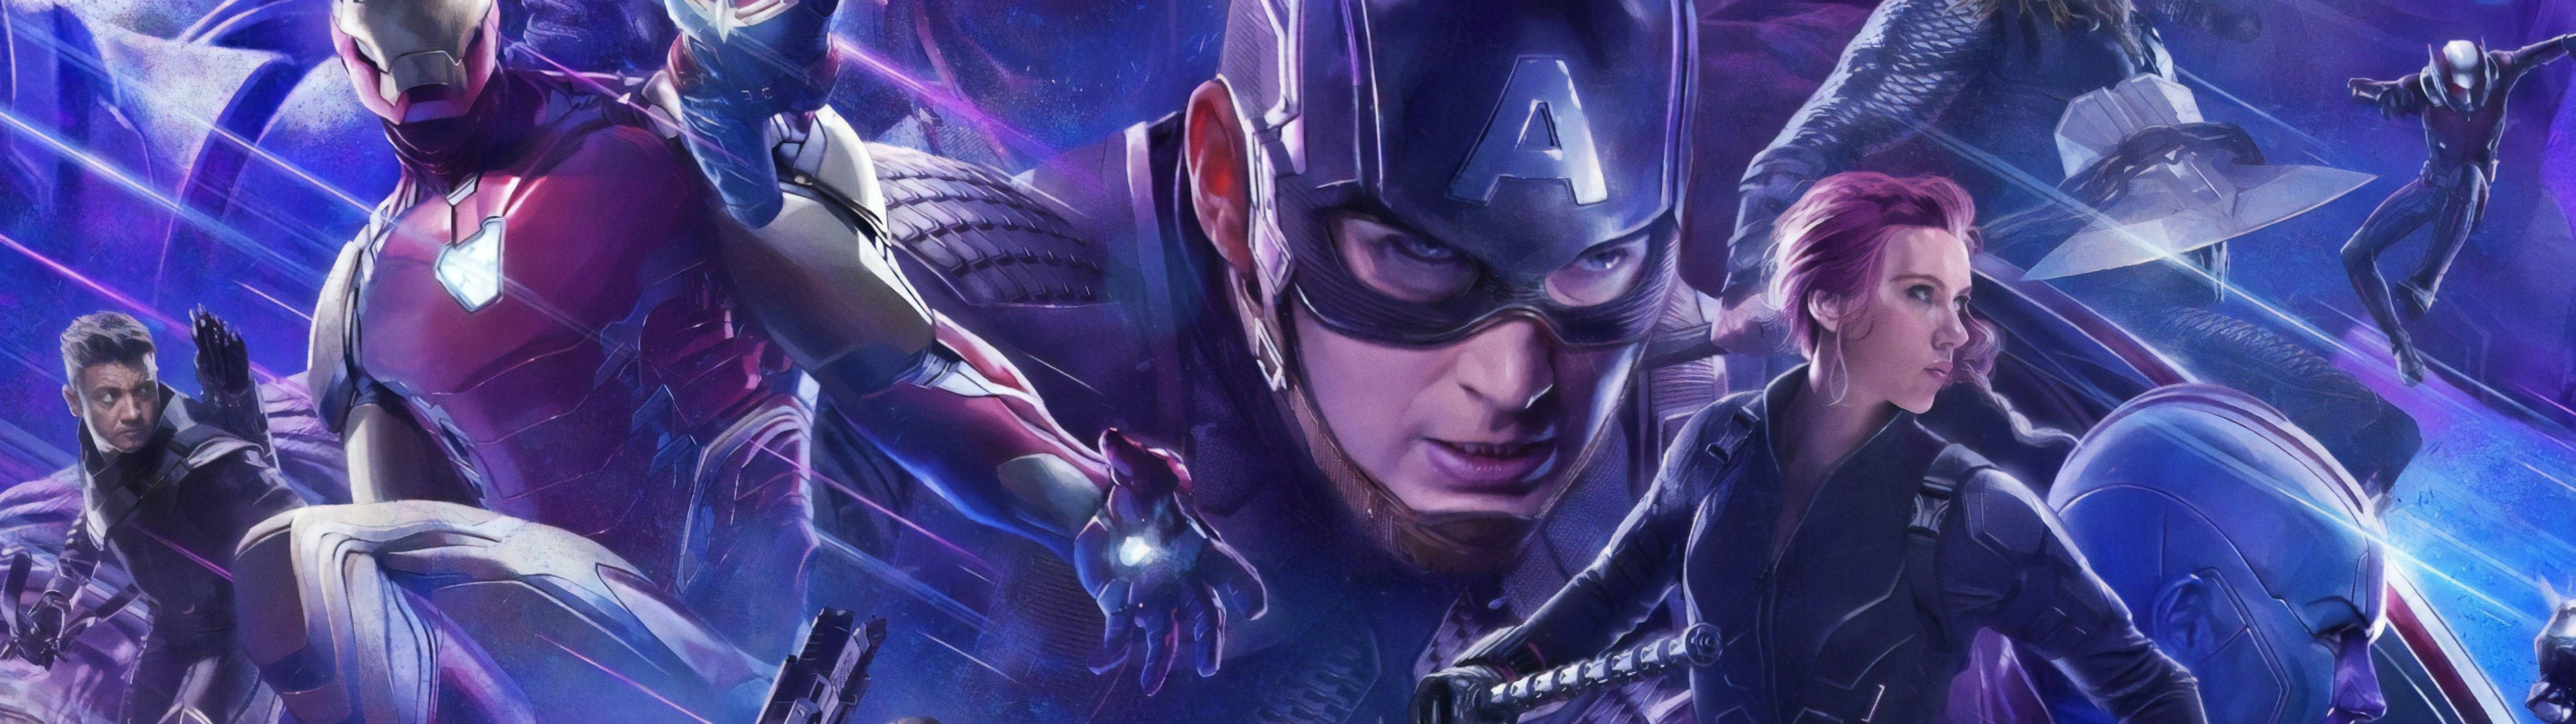 Marvel's Avengers 5120 X 1440 Wallpaper